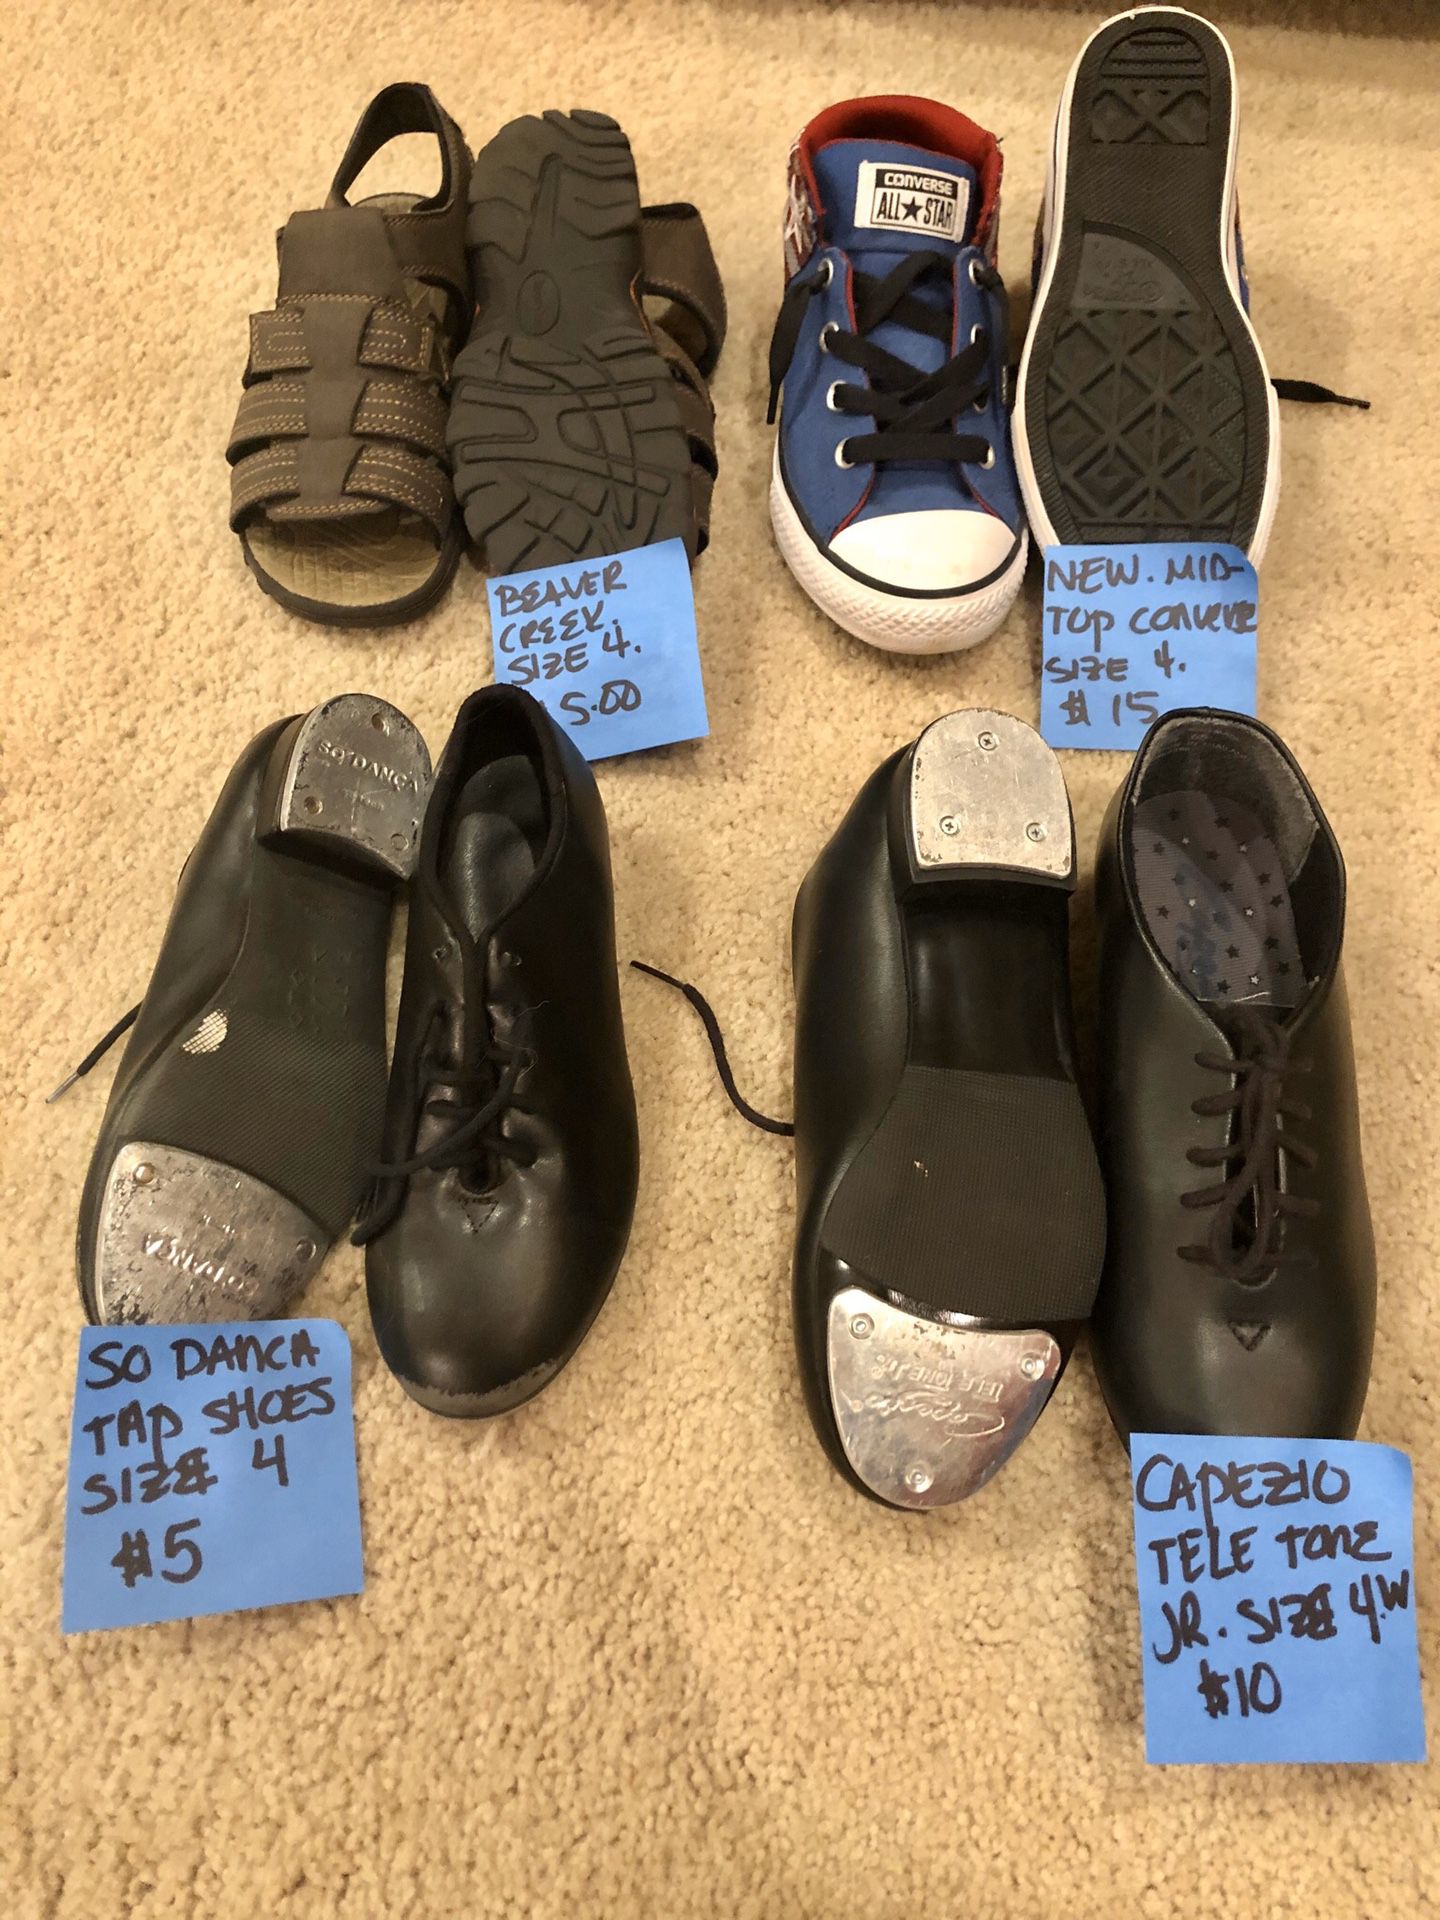 New and excellent condition shoes: converse, vans, capezio ++